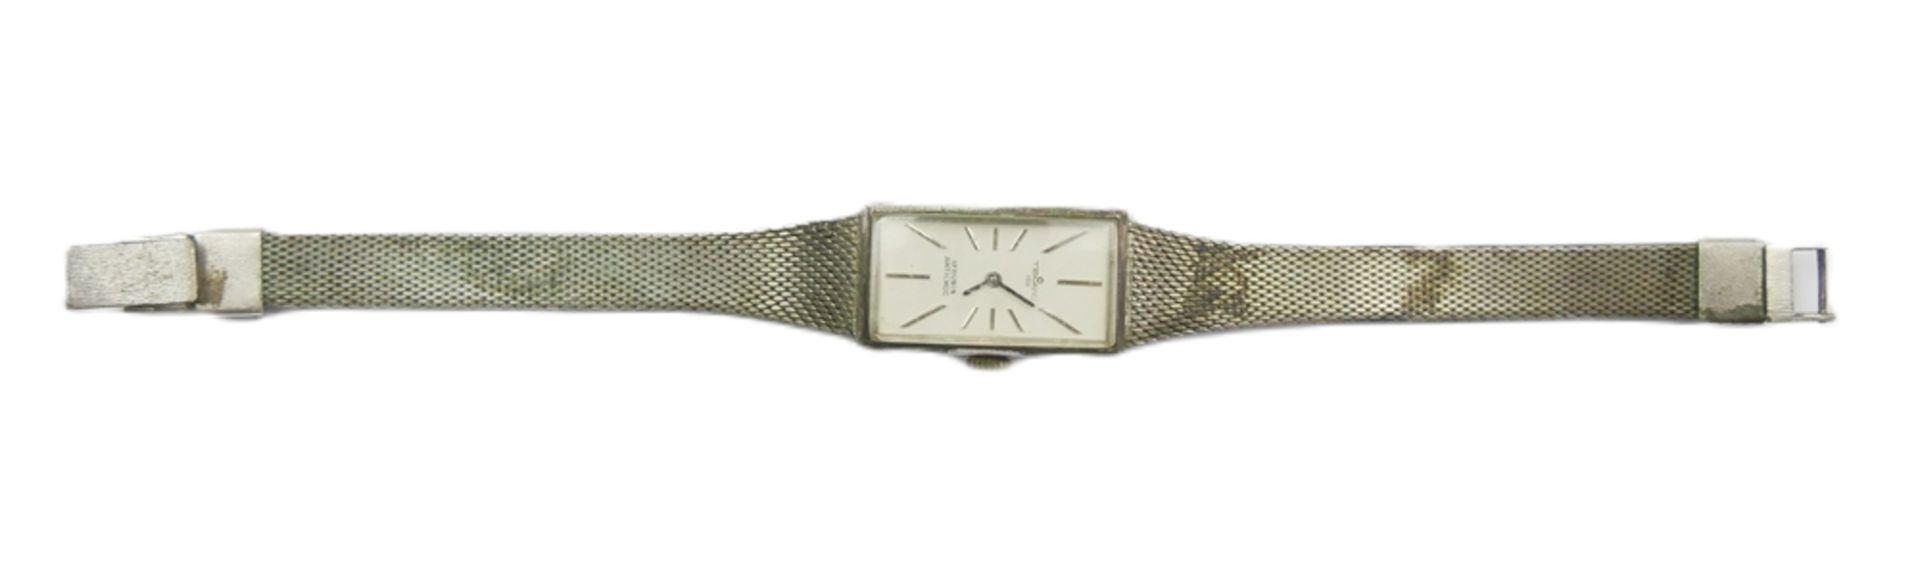 Damen Armbanduhr TEMPIC, 835er Silber. Mechanisch, Funktion geprüft